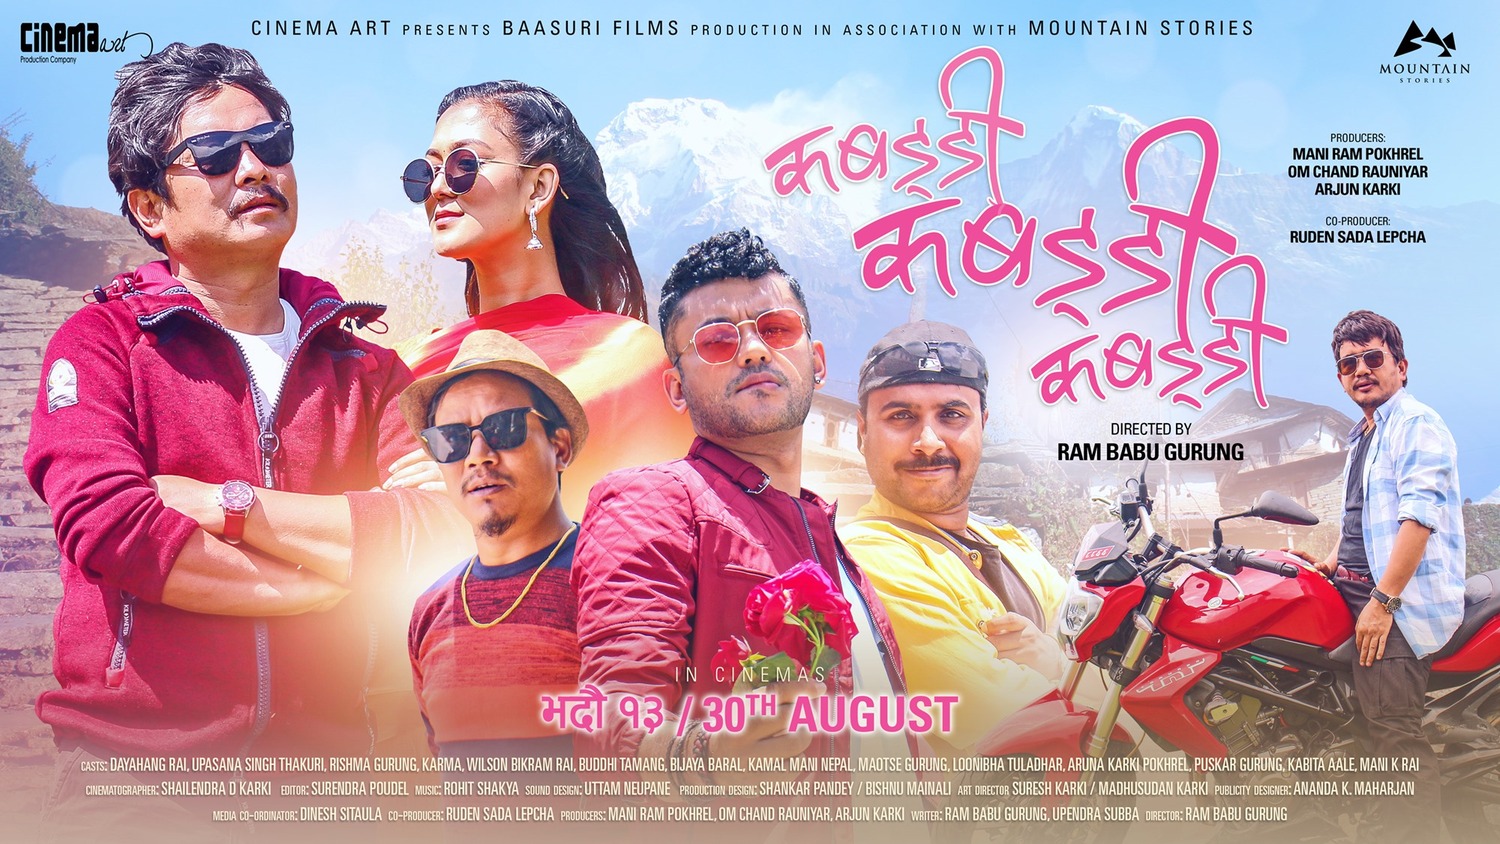 Extra Large Movie Poster Image for Kabaddi Kabaddi Kabaddi (#2 of 2)